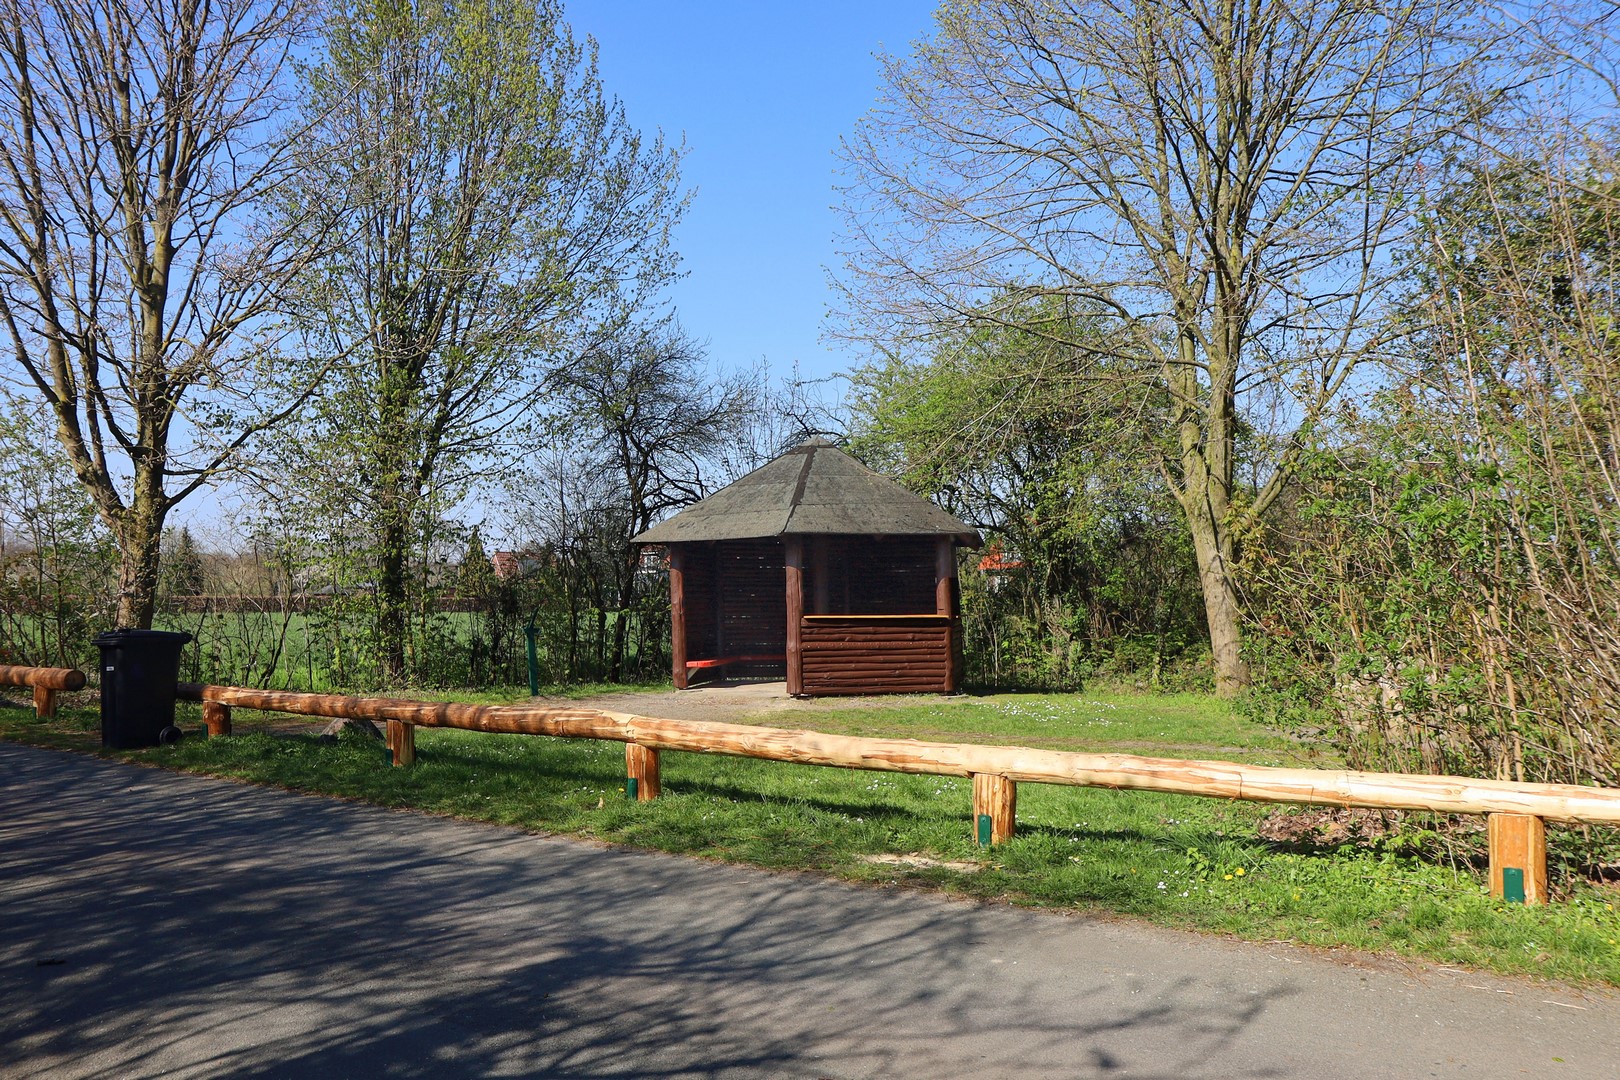 Bild  der renovierten Schutzhütte des Heimatvereins Rinkerode